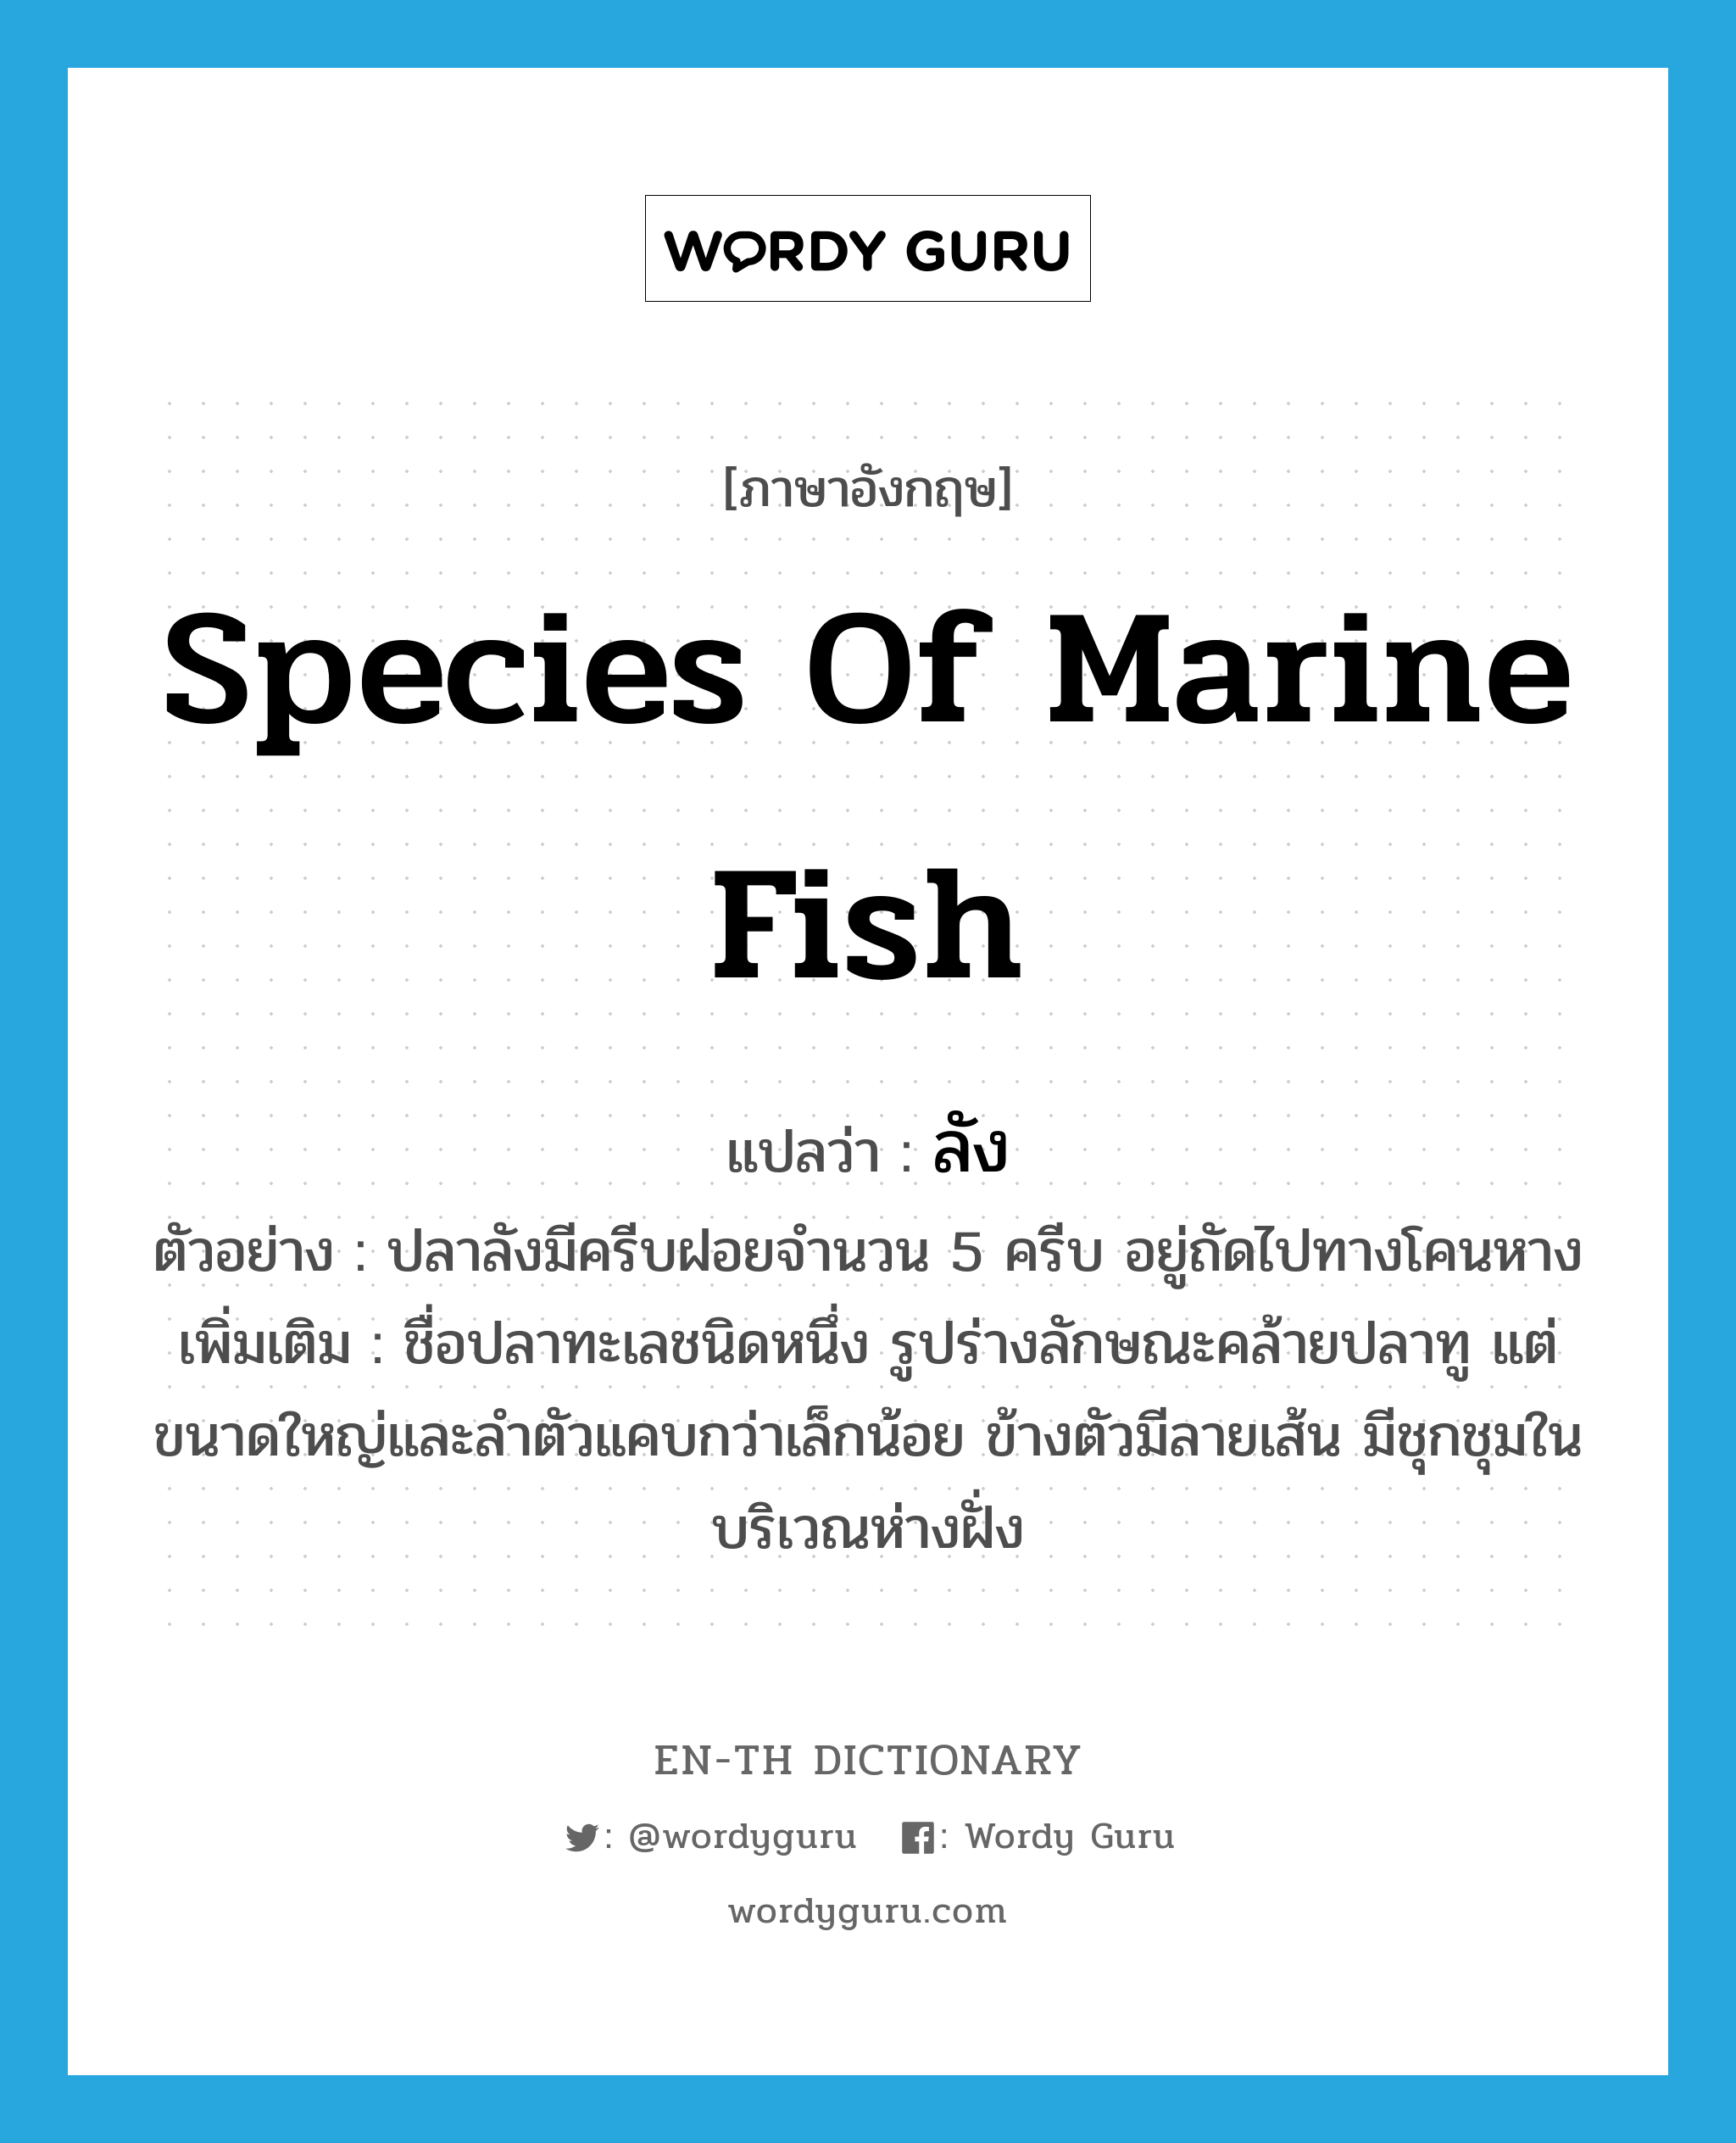 species of marine fish แปลว่า?, คำศัพท์ภาษาอังกฤษ species of marine fish แปลว่า ลัง ประเภท N ตัวอย่าง ปลาลังมีครีบฝอยจำนวน 5 ครีบ อยู่ถัดไปทางโคนหาง เพิ่มเติม ชื่อปลาทะเลชนิดหนึ่ง รูปร่างลักษณะคล้ายปลาทู แต่ขนาดใหญ่และลำตัวแคบกว่าเล็กน้อย ข้างตัวมีลายเส้น มีชุกชุมในบริเวณห่างฝั่ง หมวด N